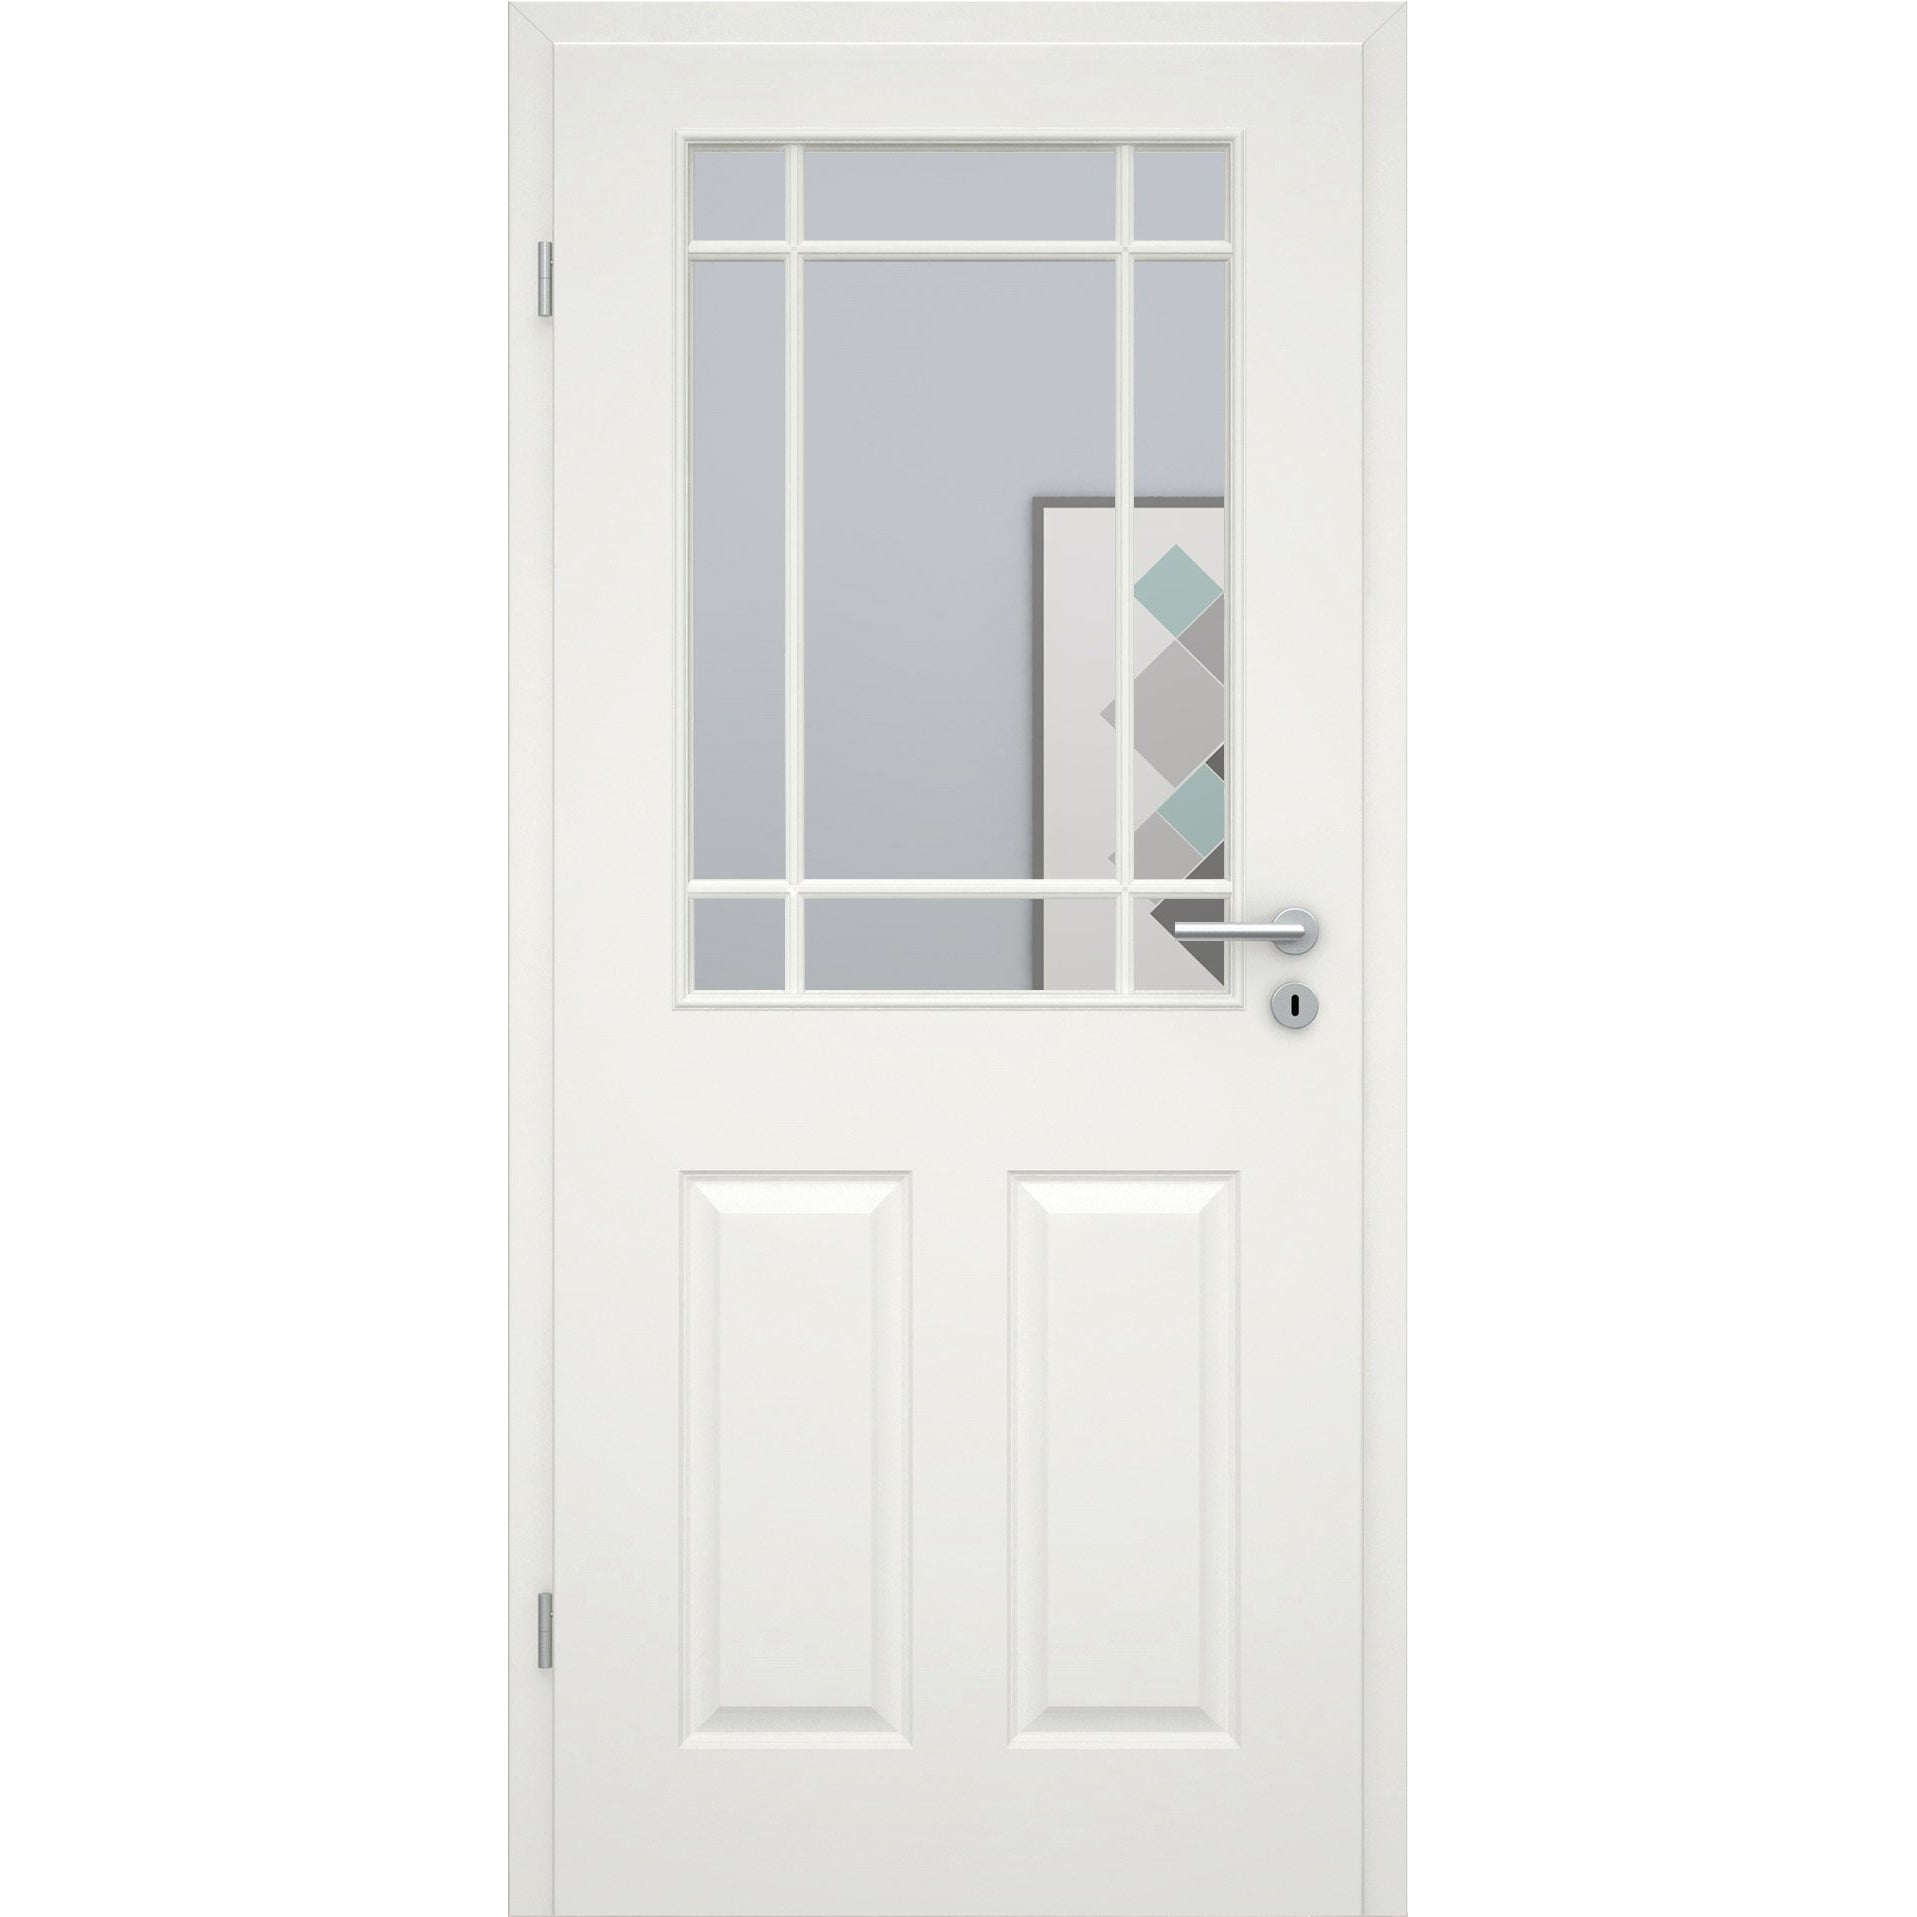 Zimmertür mit Zarge und Lichtausschnitt mit Sprossenrahmen klassisch soft-weiß 4 Kassetten Eckkante - Modell Stiltür K41LASPK